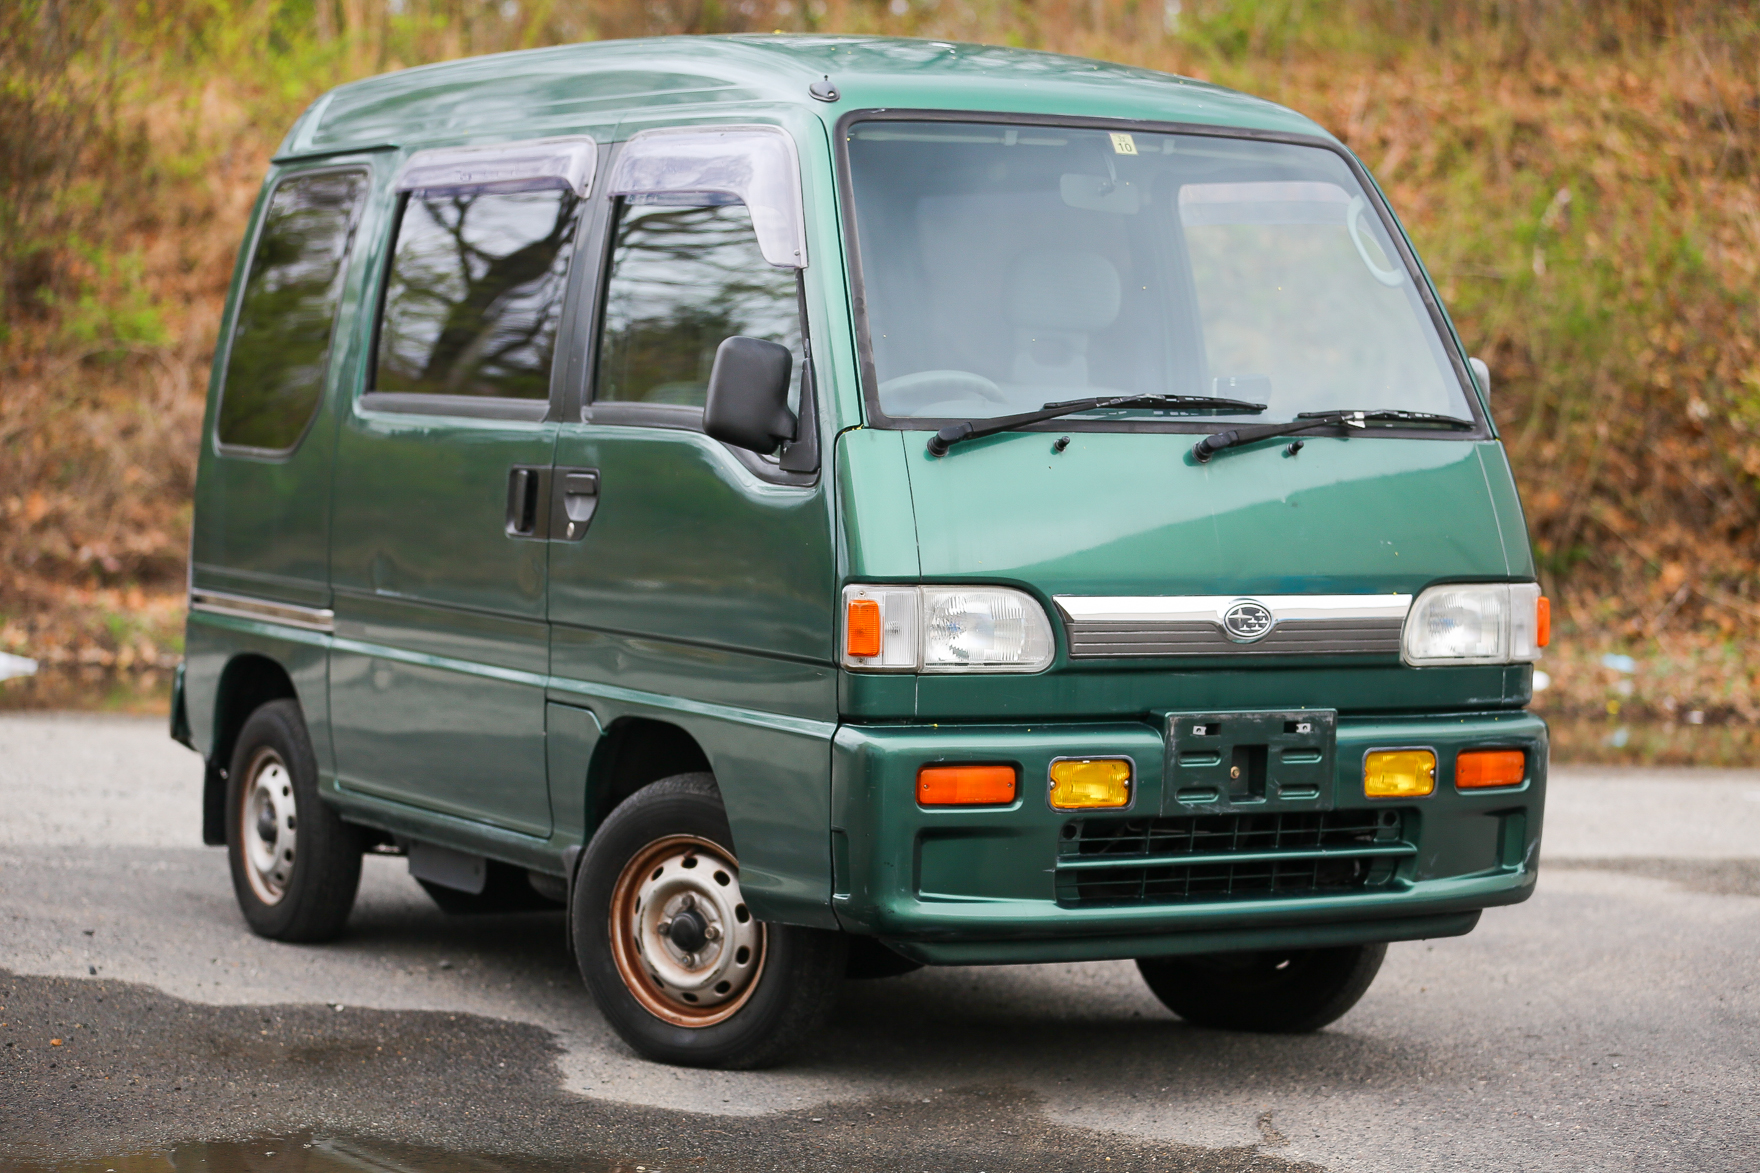 1996 Subaru Sambar Van - $8,500